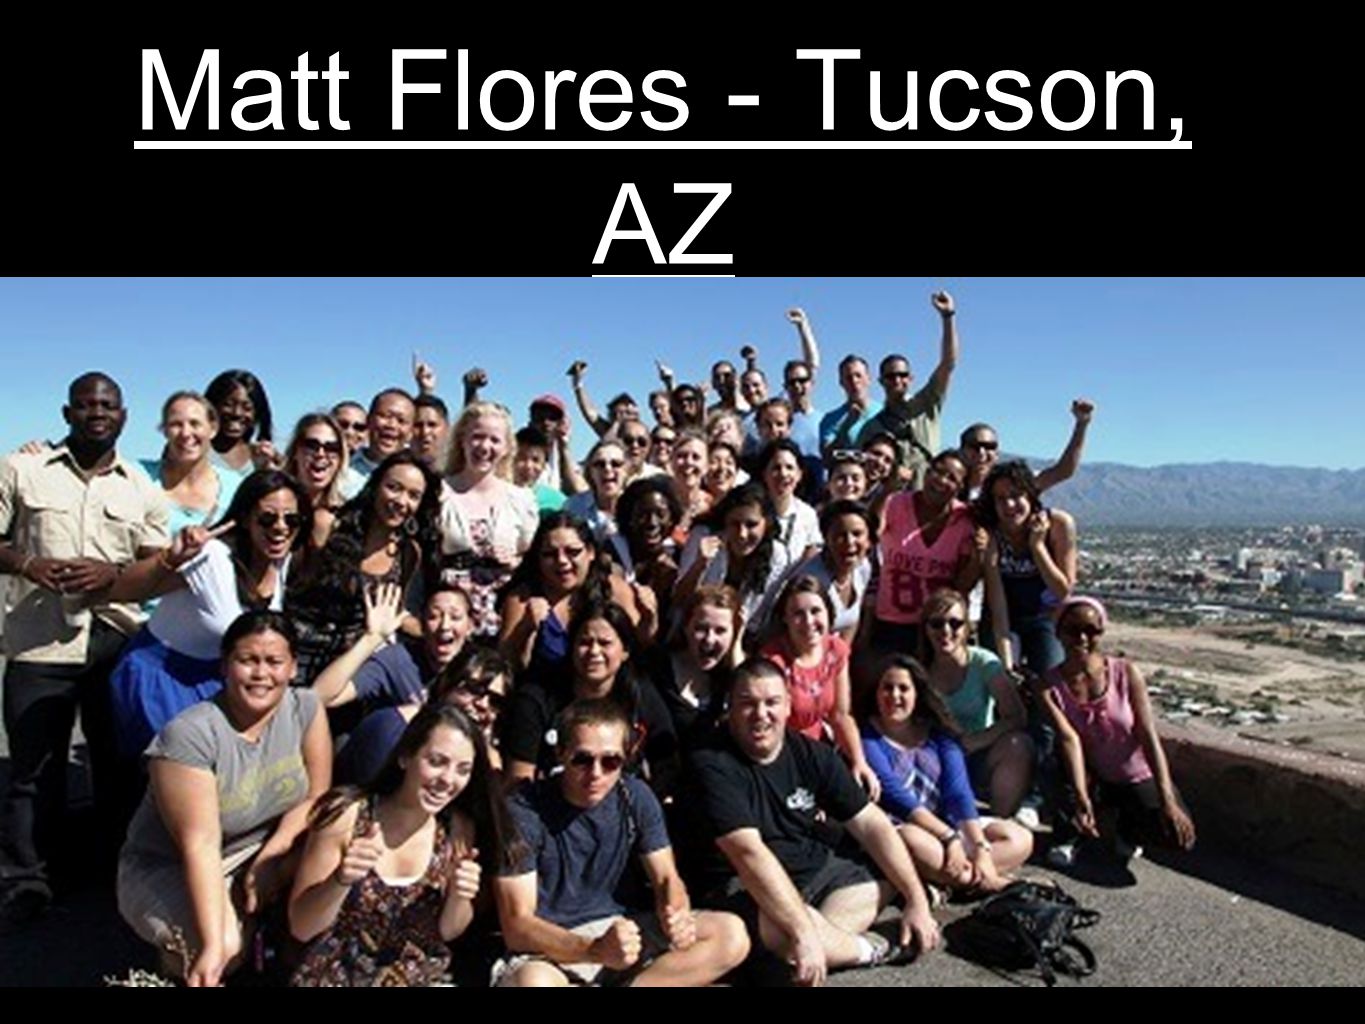 Matt Flores - Tucson, AZ